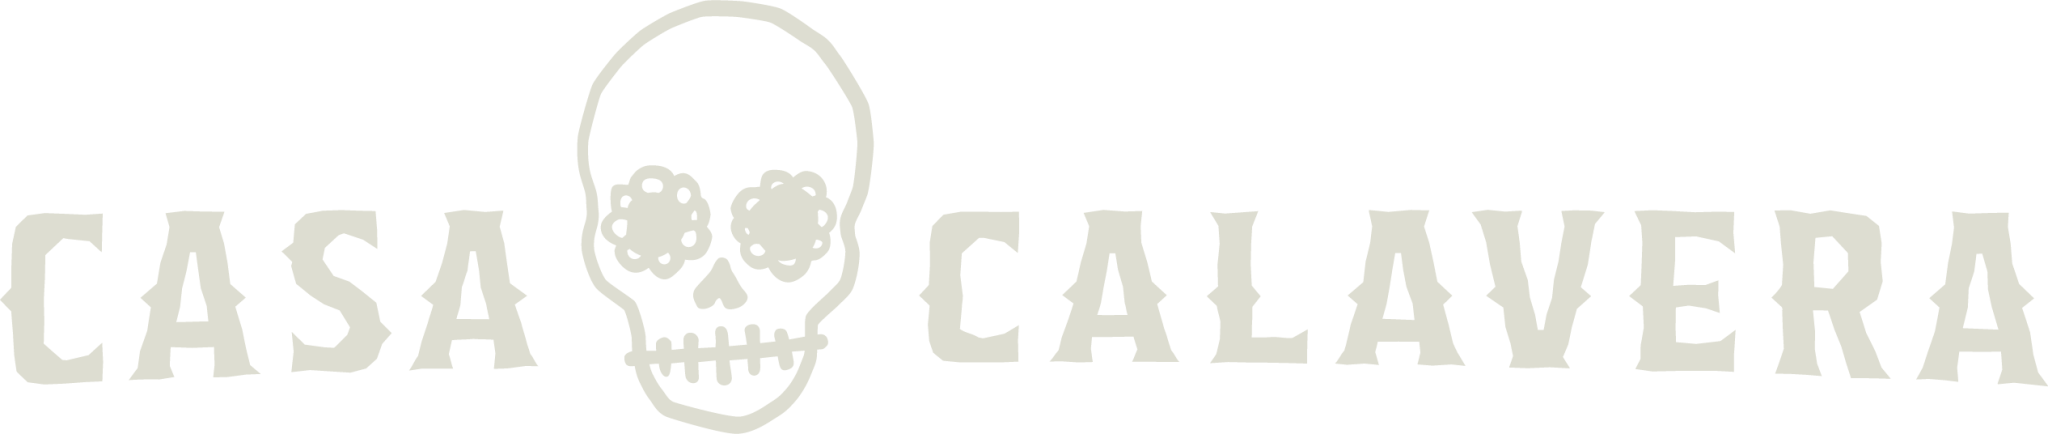 Casa Calavera Logo